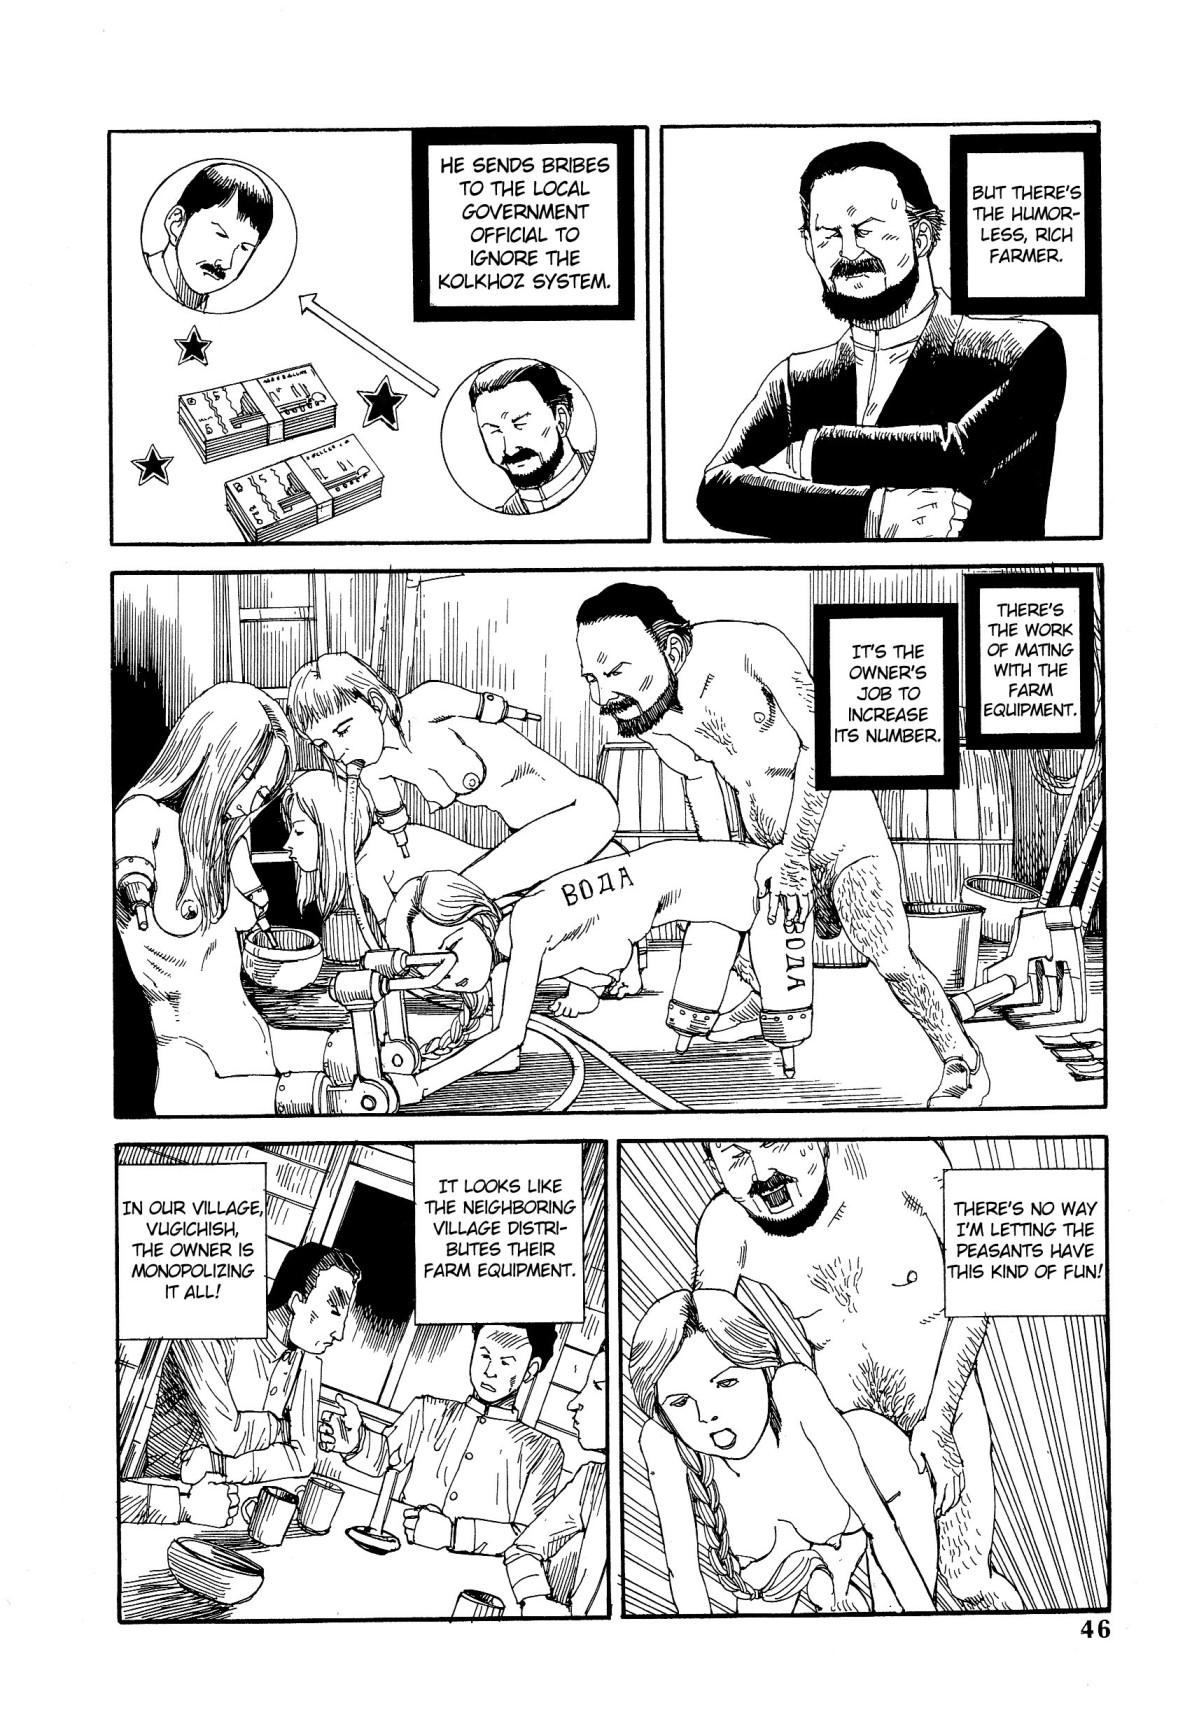 Prima Shintaro Kago - His Excellency the Daredevil Tight Ass - Page 3